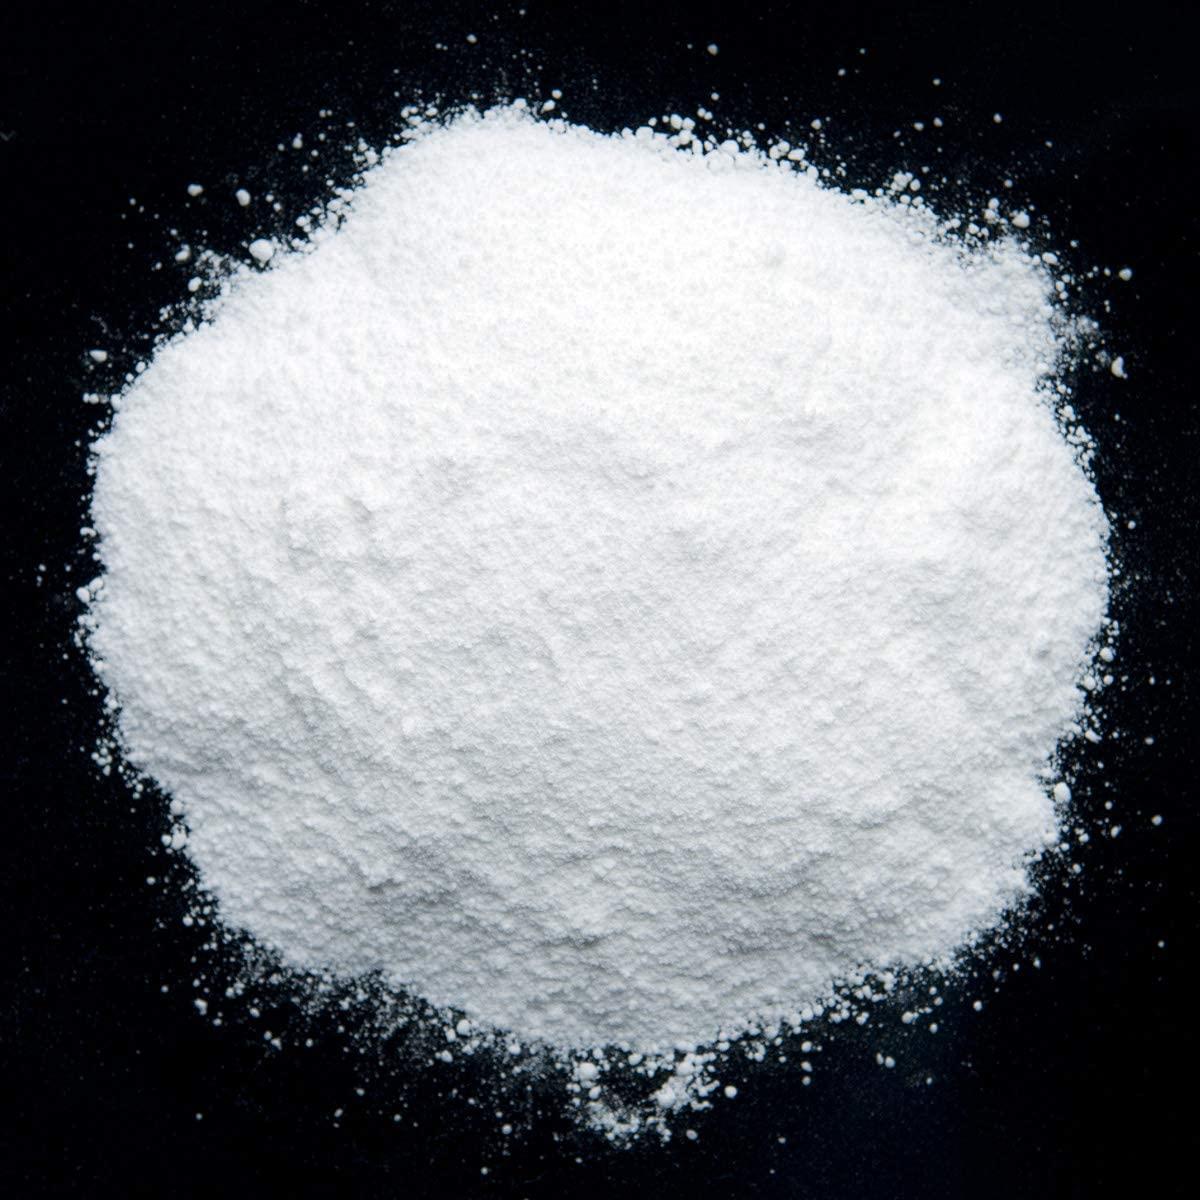 Sodium COCOYL ISETHIONATE (SCI) Powder - 100g | 3.53oz - Anionic